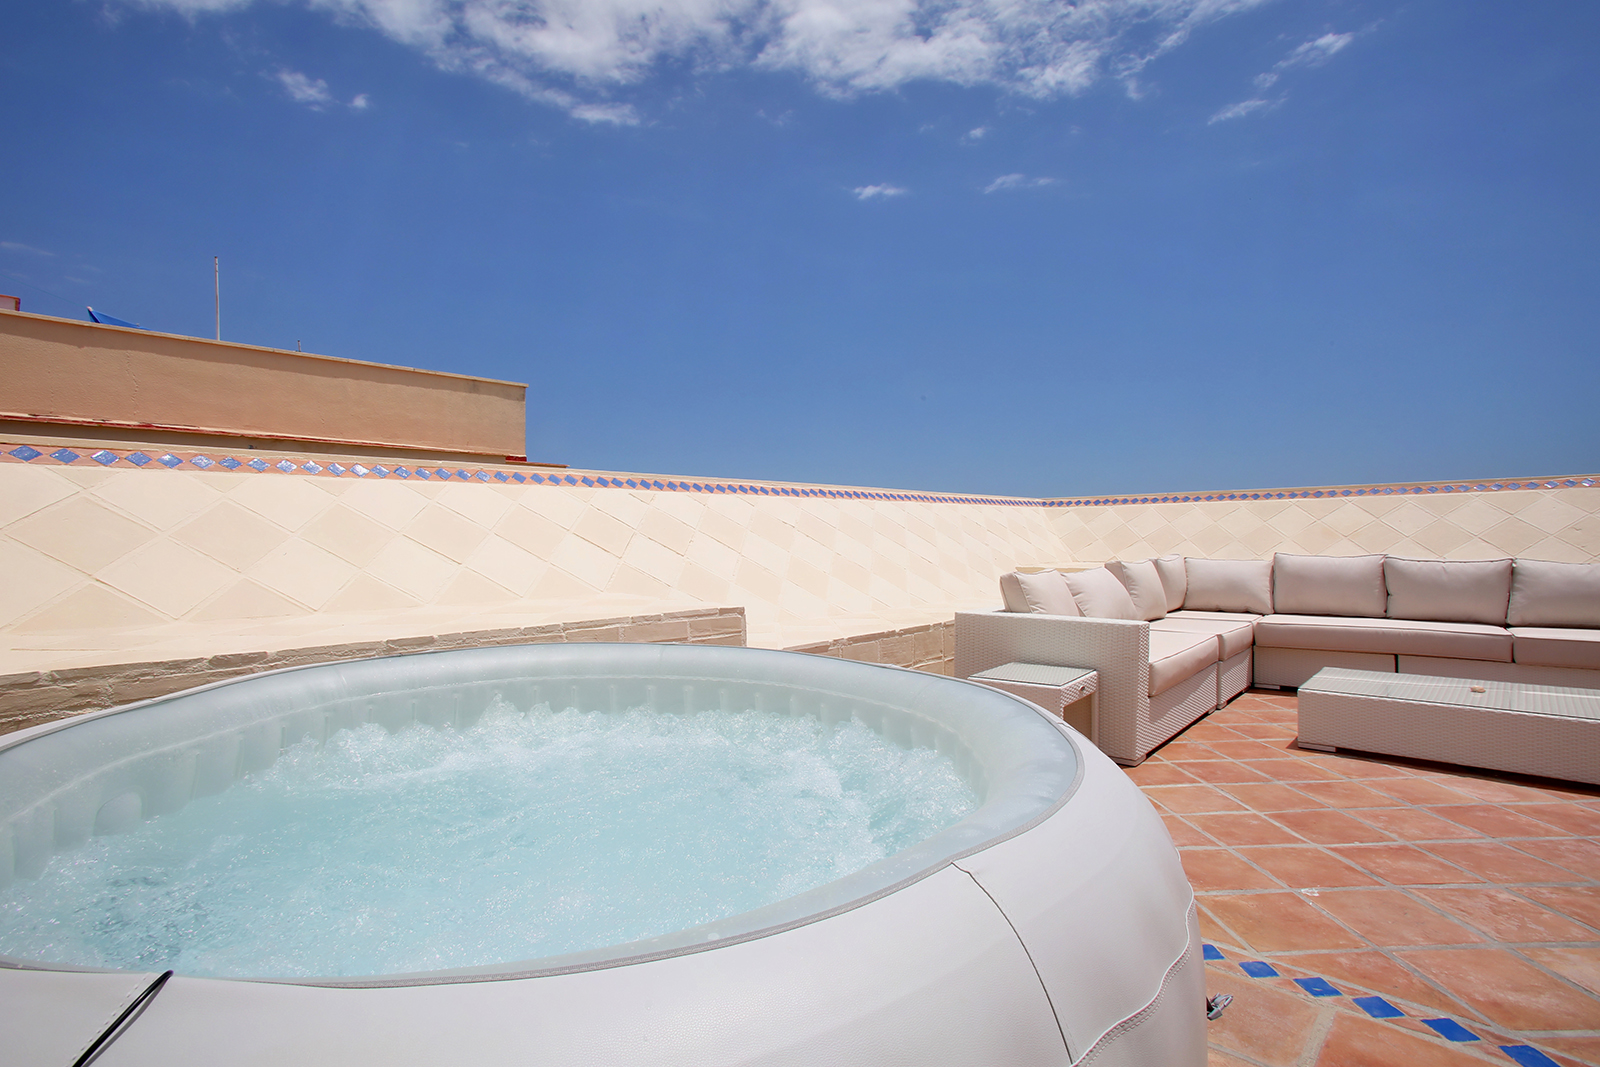 Mirasol - Rooftop Hot tub